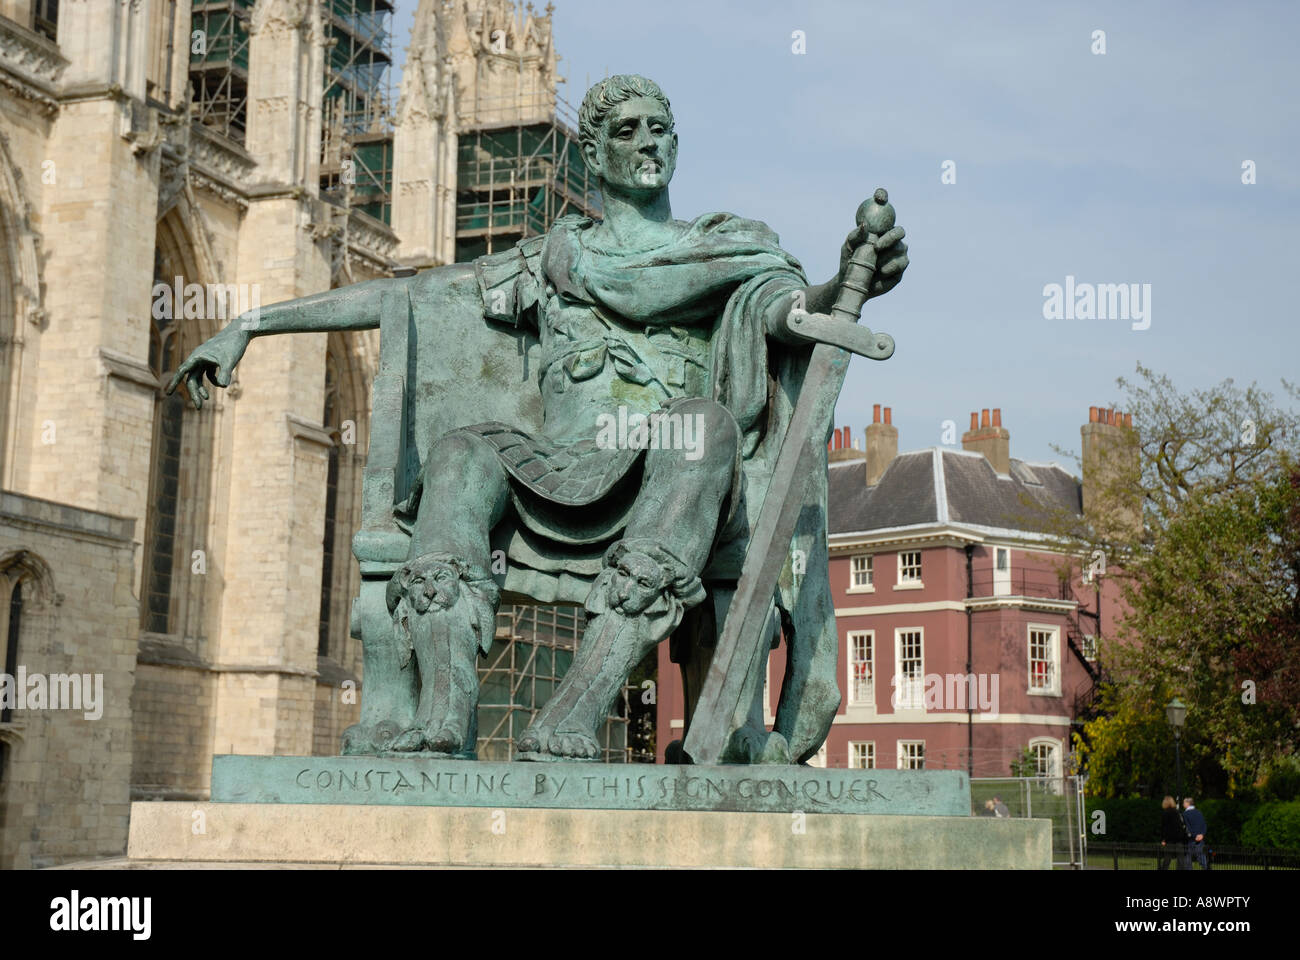 Une statue de Constantin le Grand à York Minster, York, Angleterre Banque D'Images